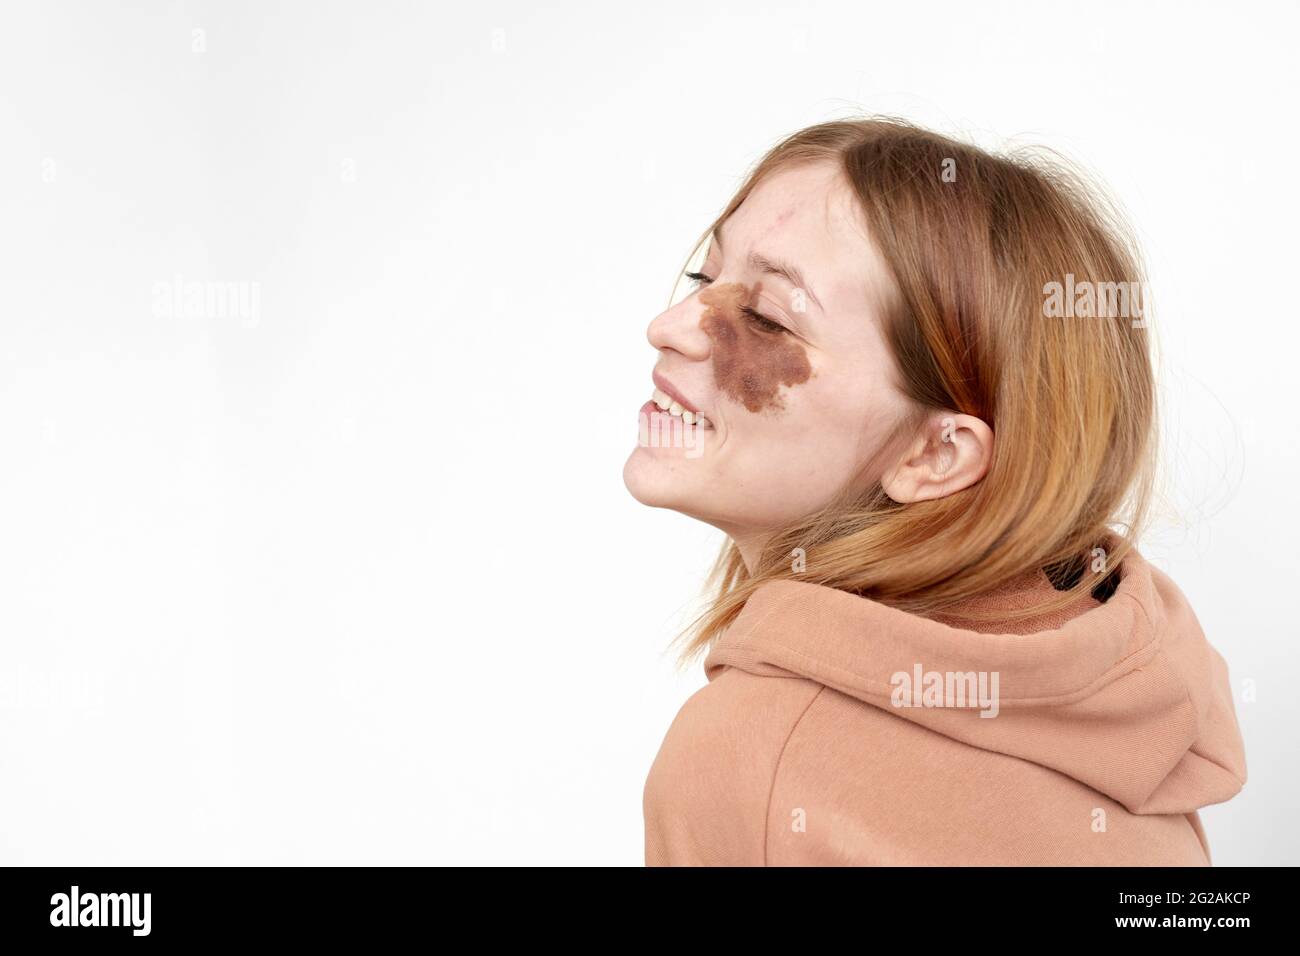 Vue latérale d'une jeune fille heureuse à capuche avec un symbole de naissance marron sur le visage avec des yeux fermés sur fond blanc dans un studio lumineux Banque D'Images